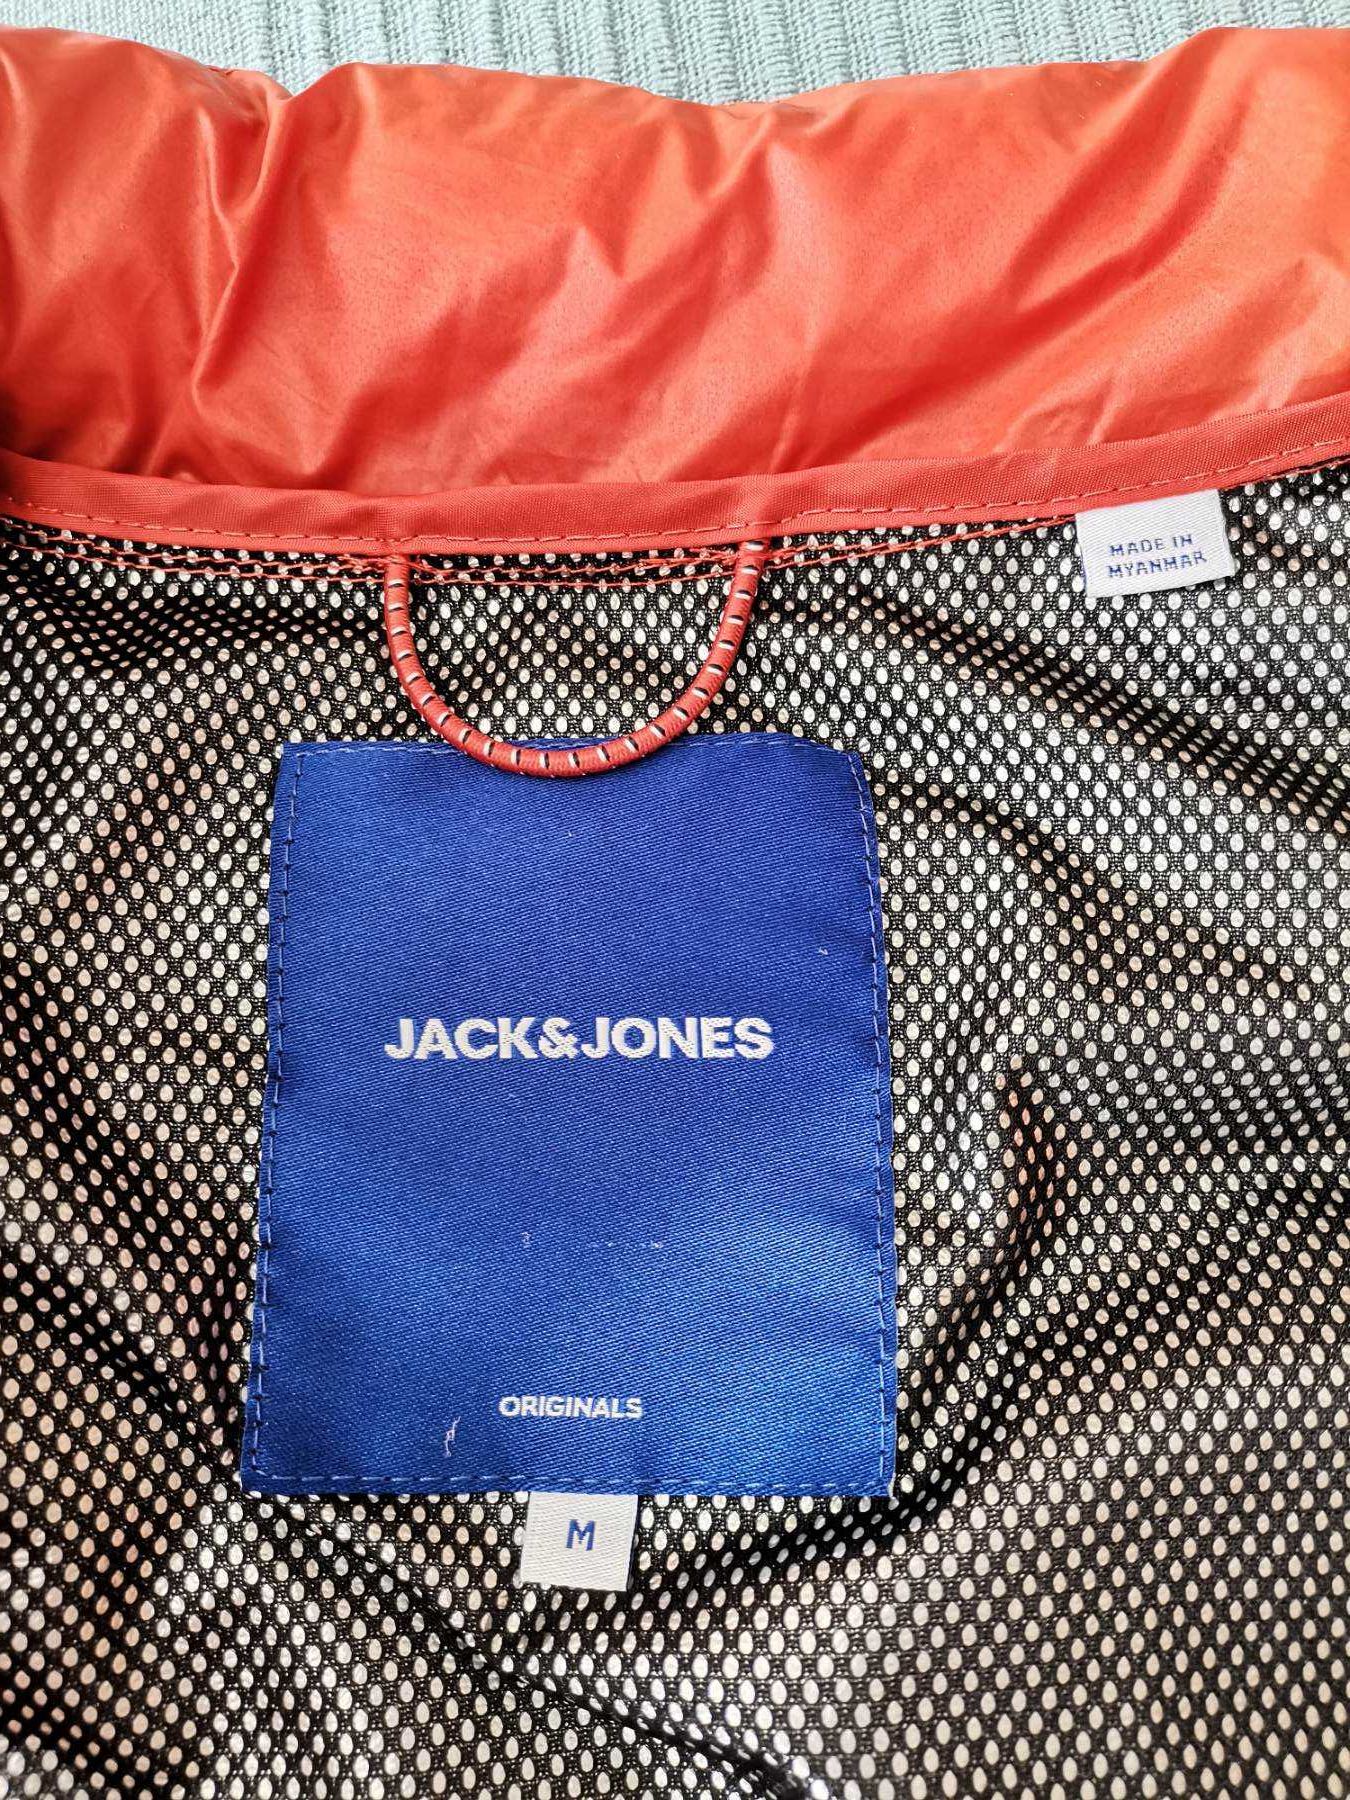 Капитонирано мъжко яке с подплата. Jack Jones Originals. Като ново.